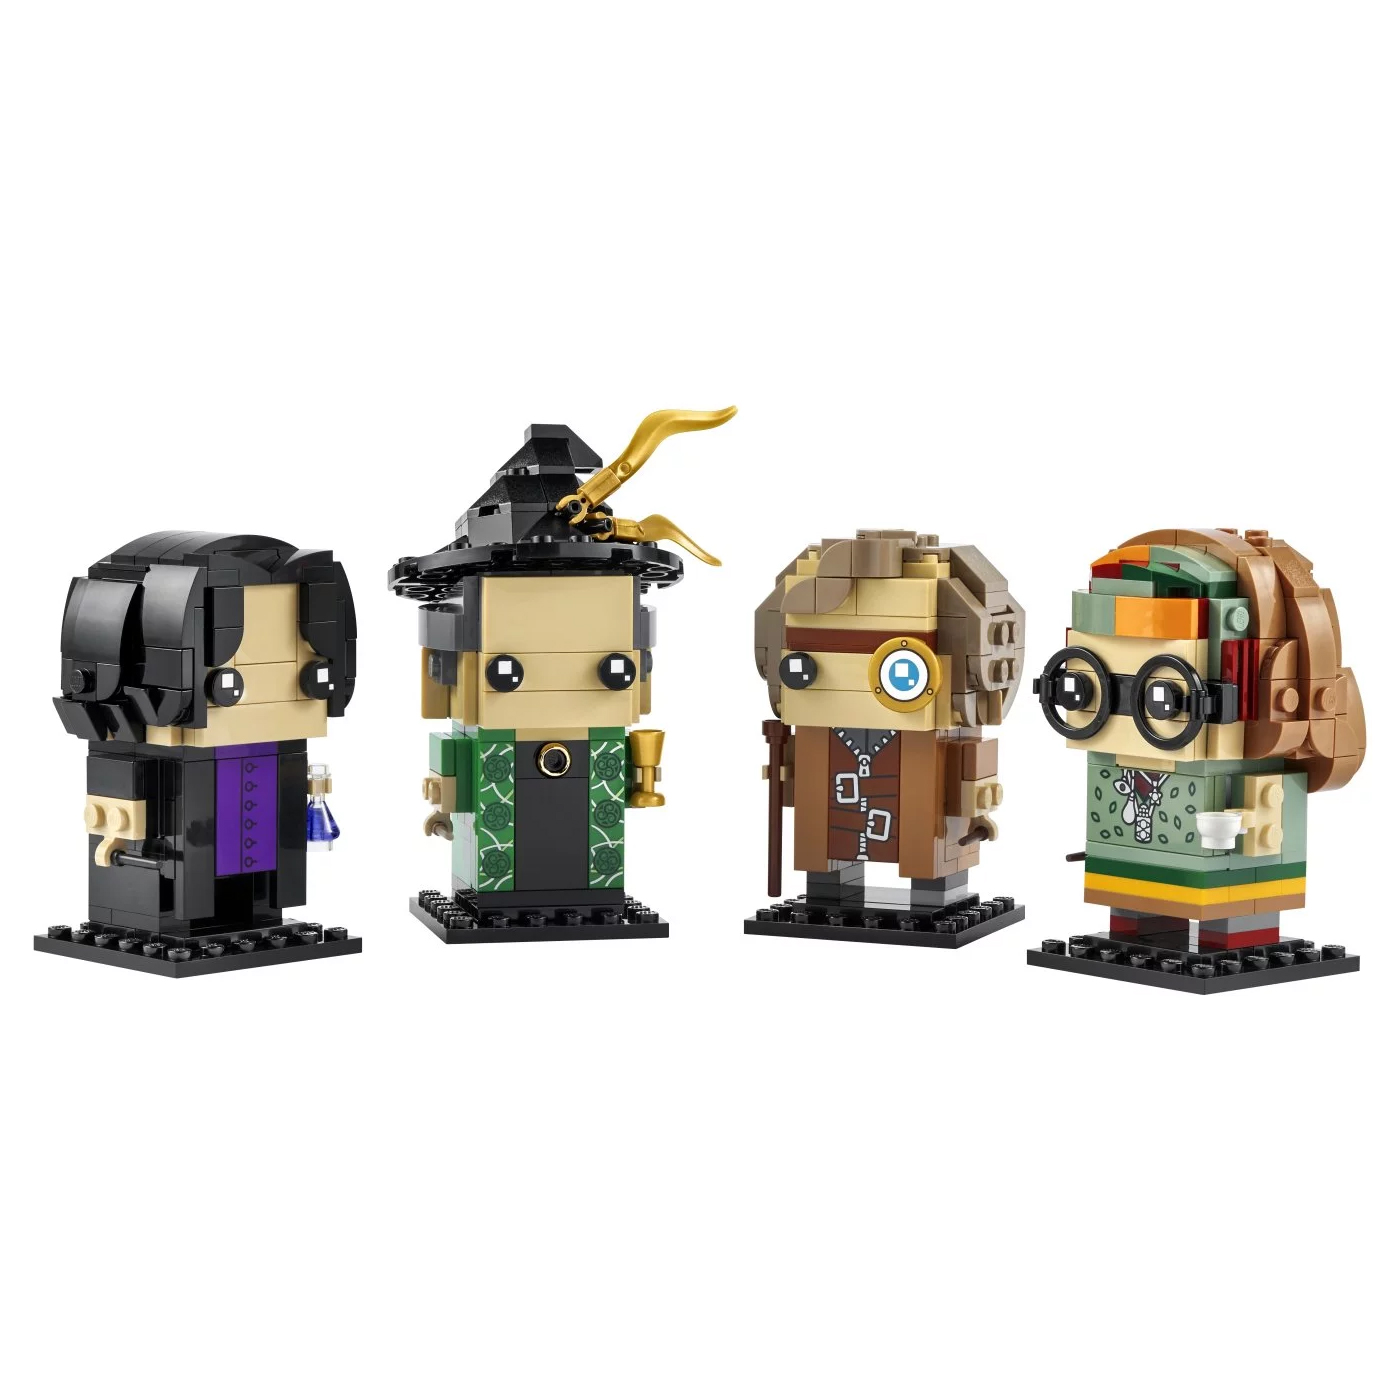 Конструктор Lego BrickHeadz Harry Potter Professors of Hogwarts 40560, 601 деталь конструктор lego brickheadz 40348 клоун на день рождения